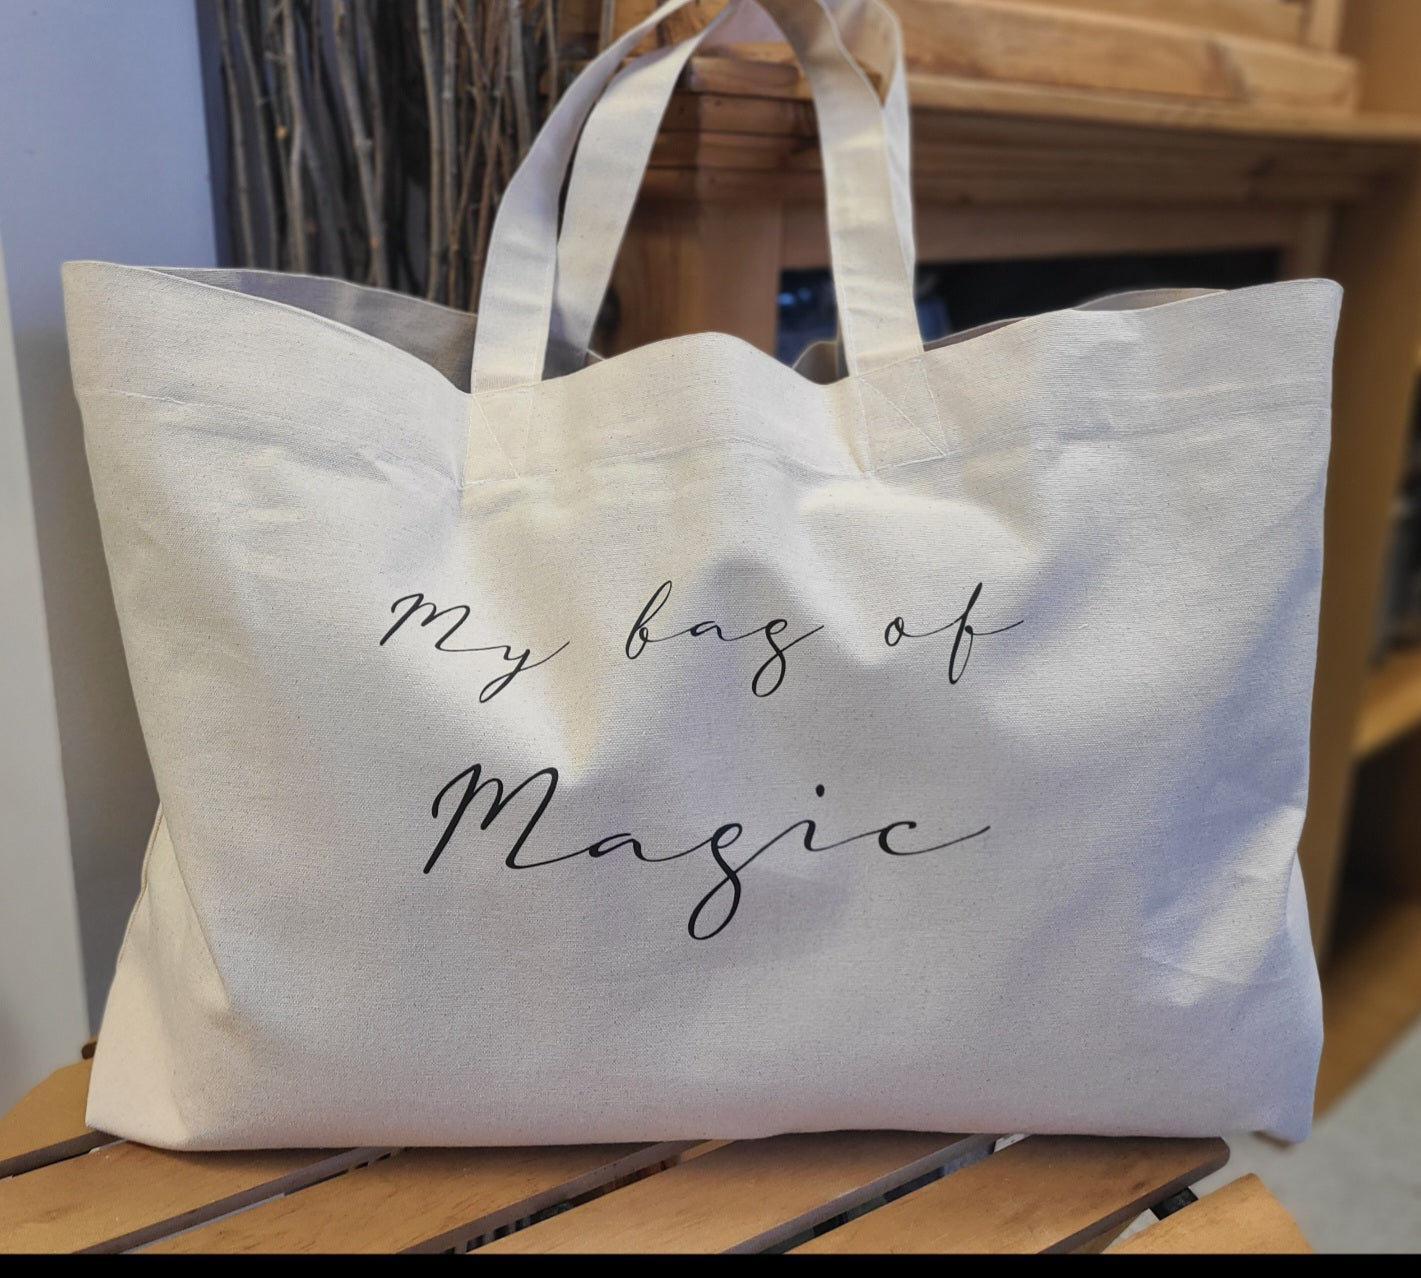 My bag of Magic Tote Bag